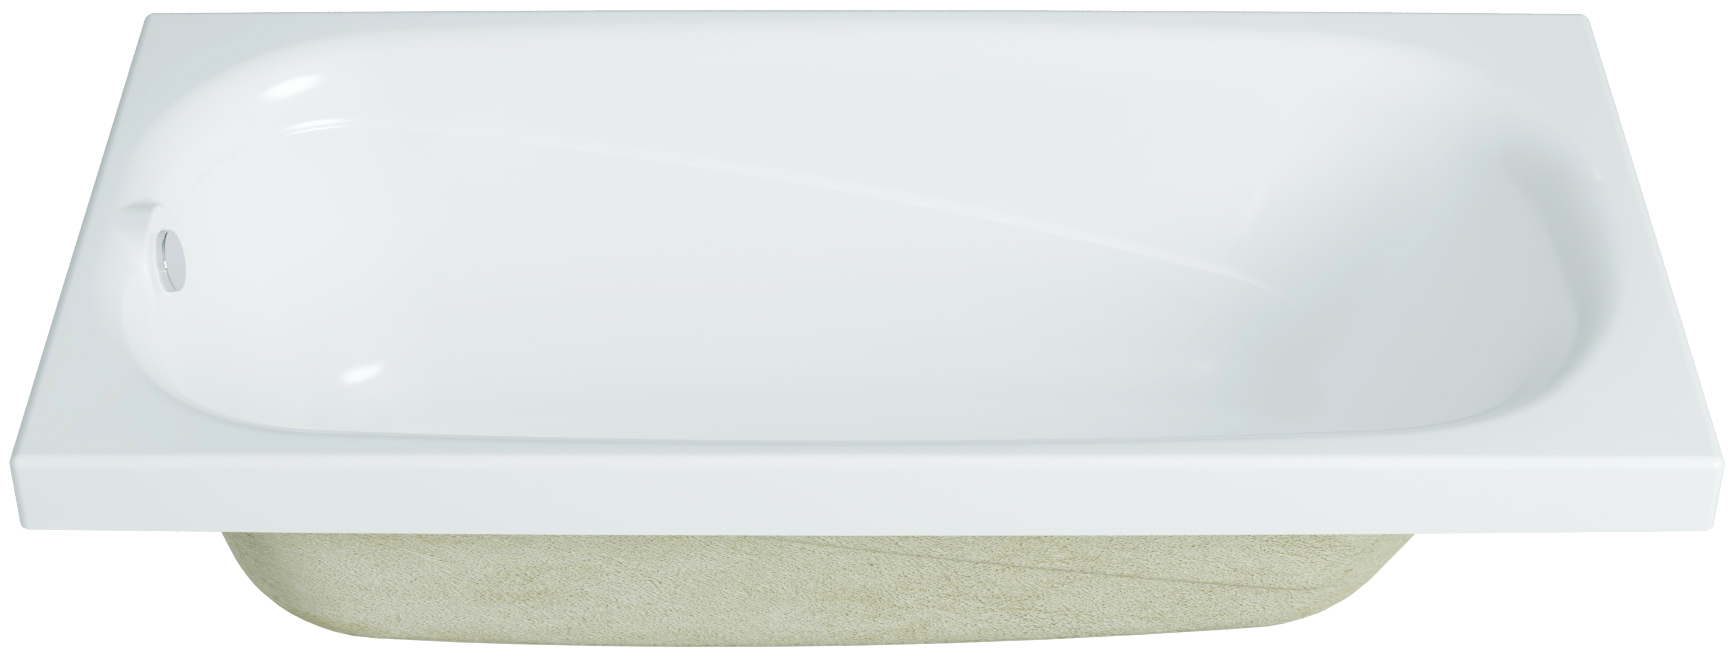 Акриловая ванна DIWO Кострома 180x70 прямоугольная, белая, российская, пристенная, с ножками 506400 - 5